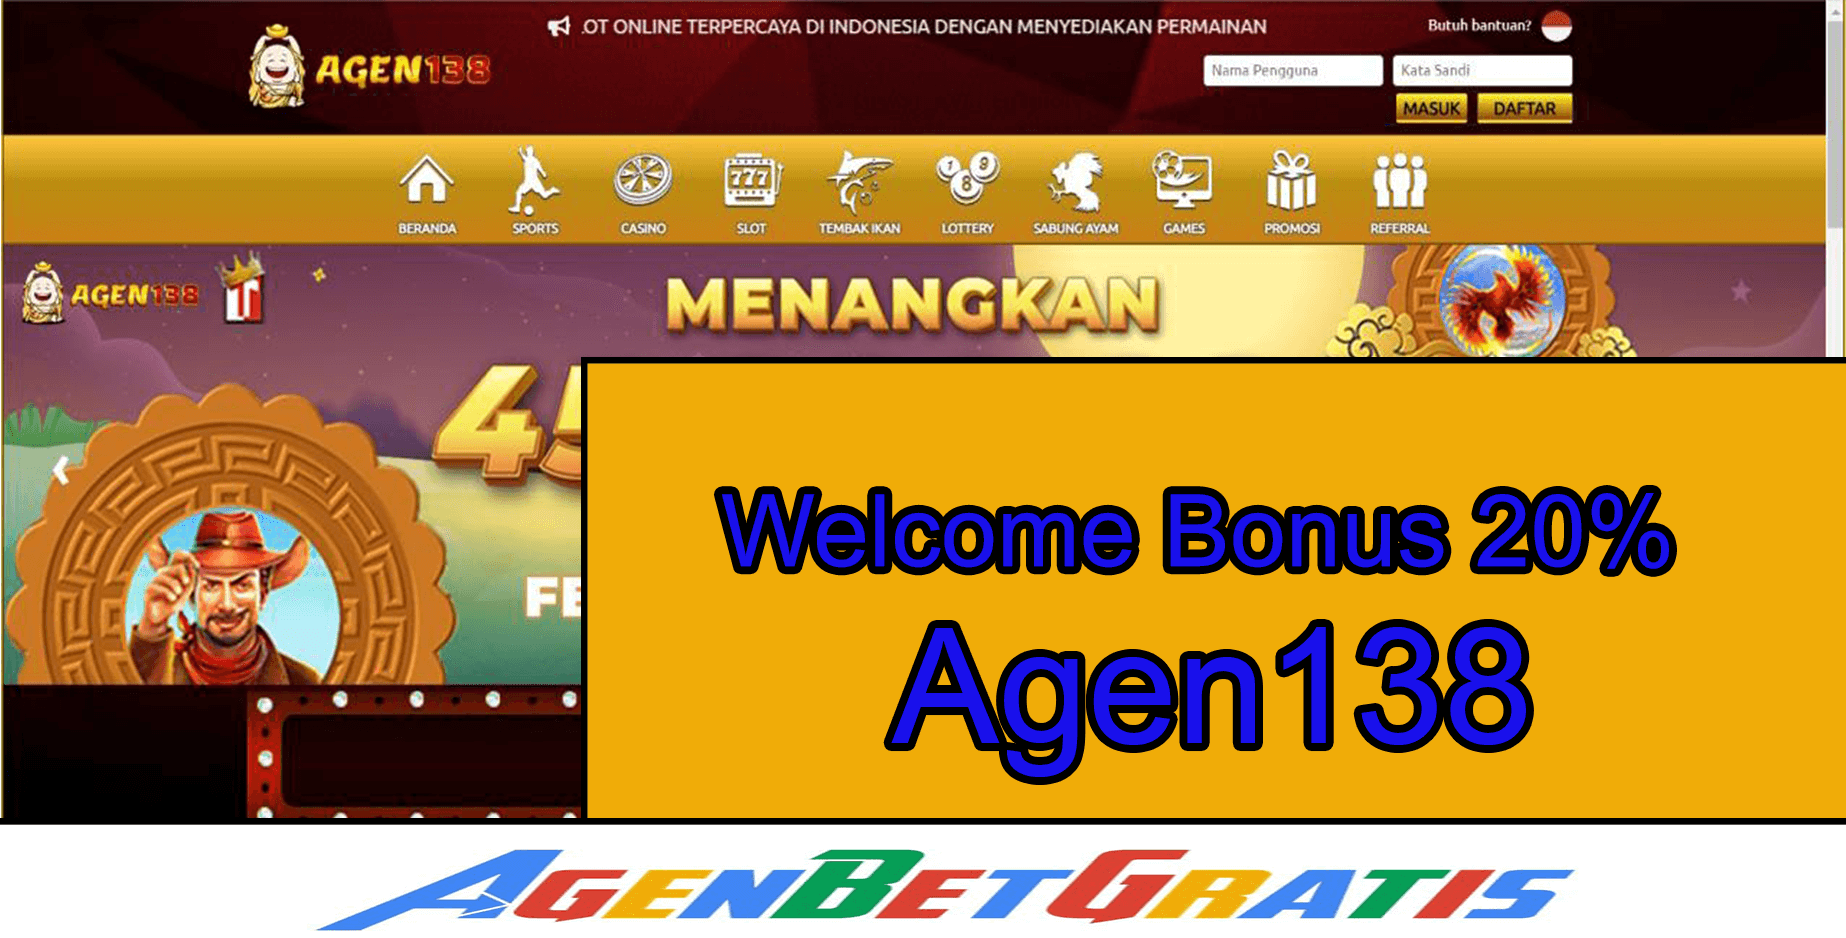 AGEN138 - Welcome Bonus 20%